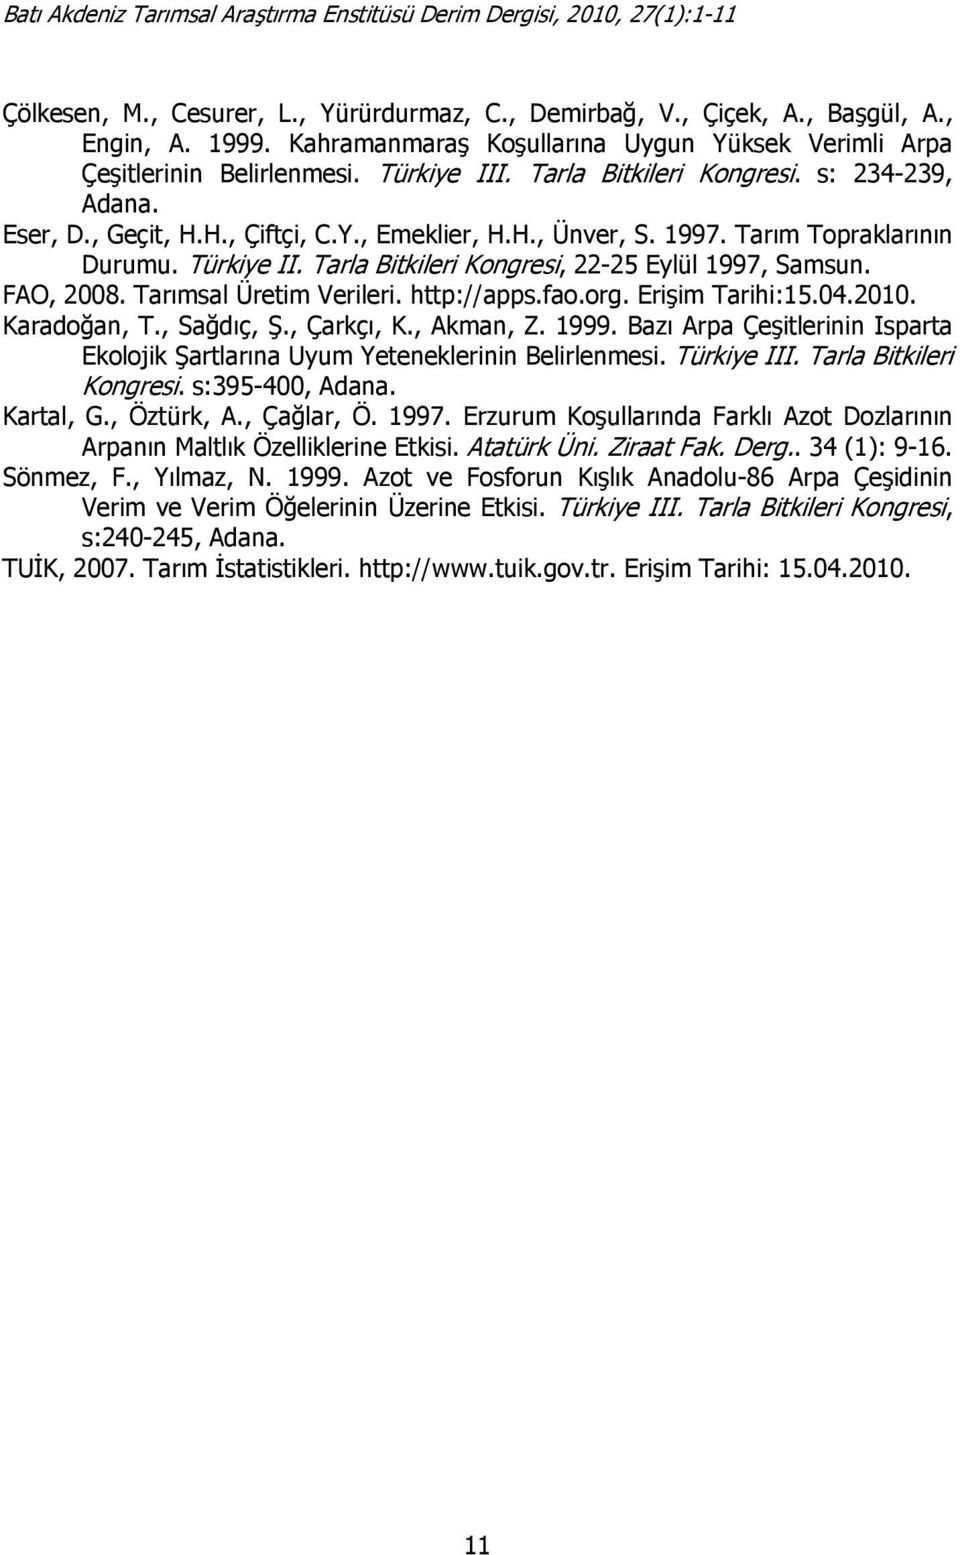 Tarla Bitkileri Kongresi, 22-25 Eylül 1997, Samsun. FAO, 2008. Tarımsal Üretim Verileri. http://apps.fao.org. Erişim Tarihi:15.04.2010. Karadoğan, T., Sağdıç, Ş., Çarkçı, K., Akman, Z. 1999.